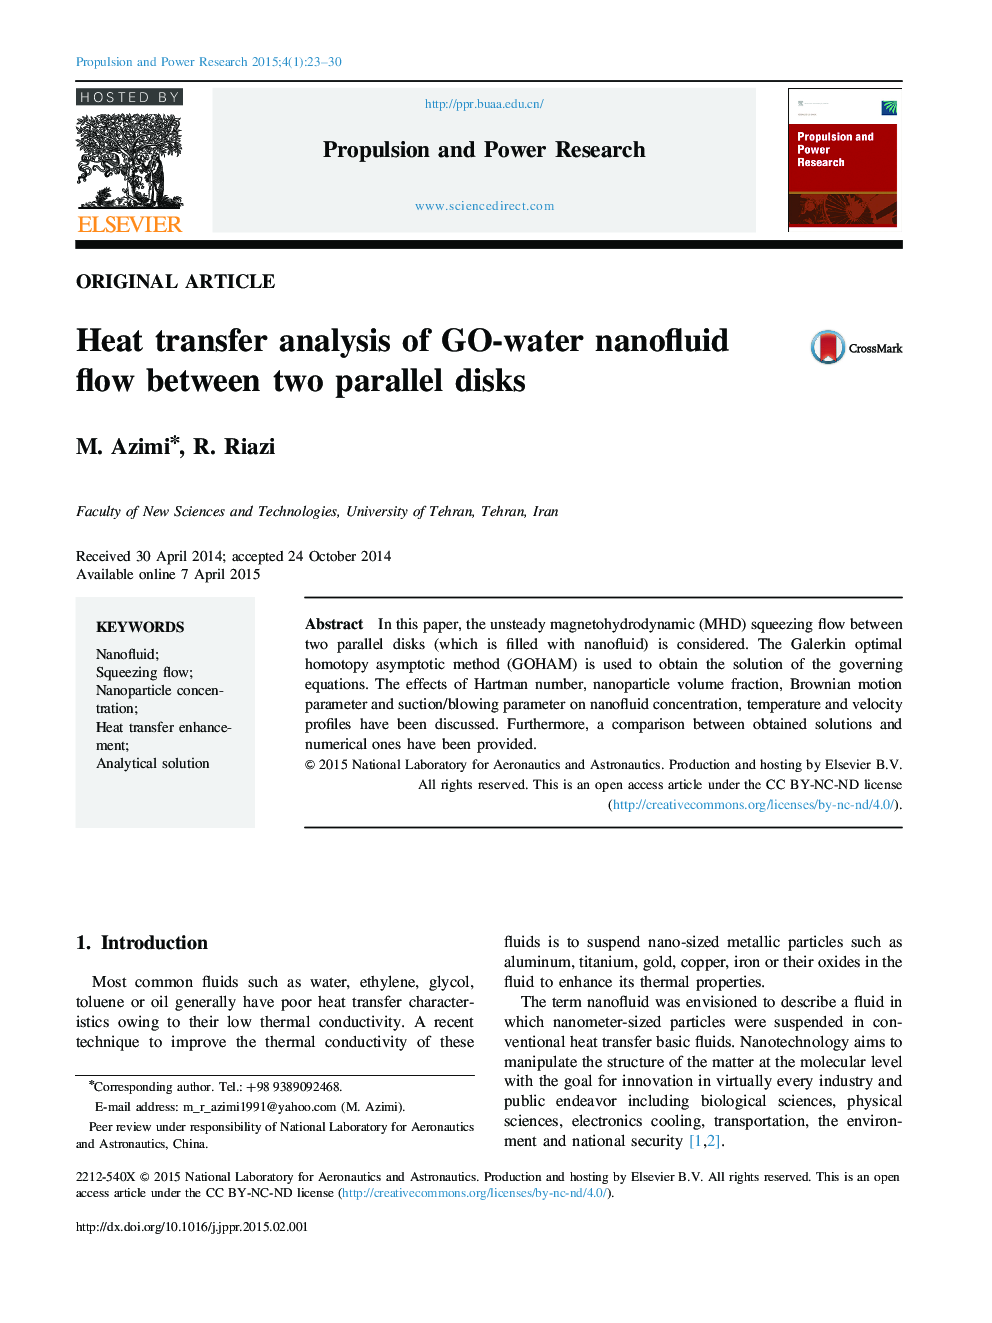 Heat transfer analysis of GO-water nanofluid flow between two parallel disks 